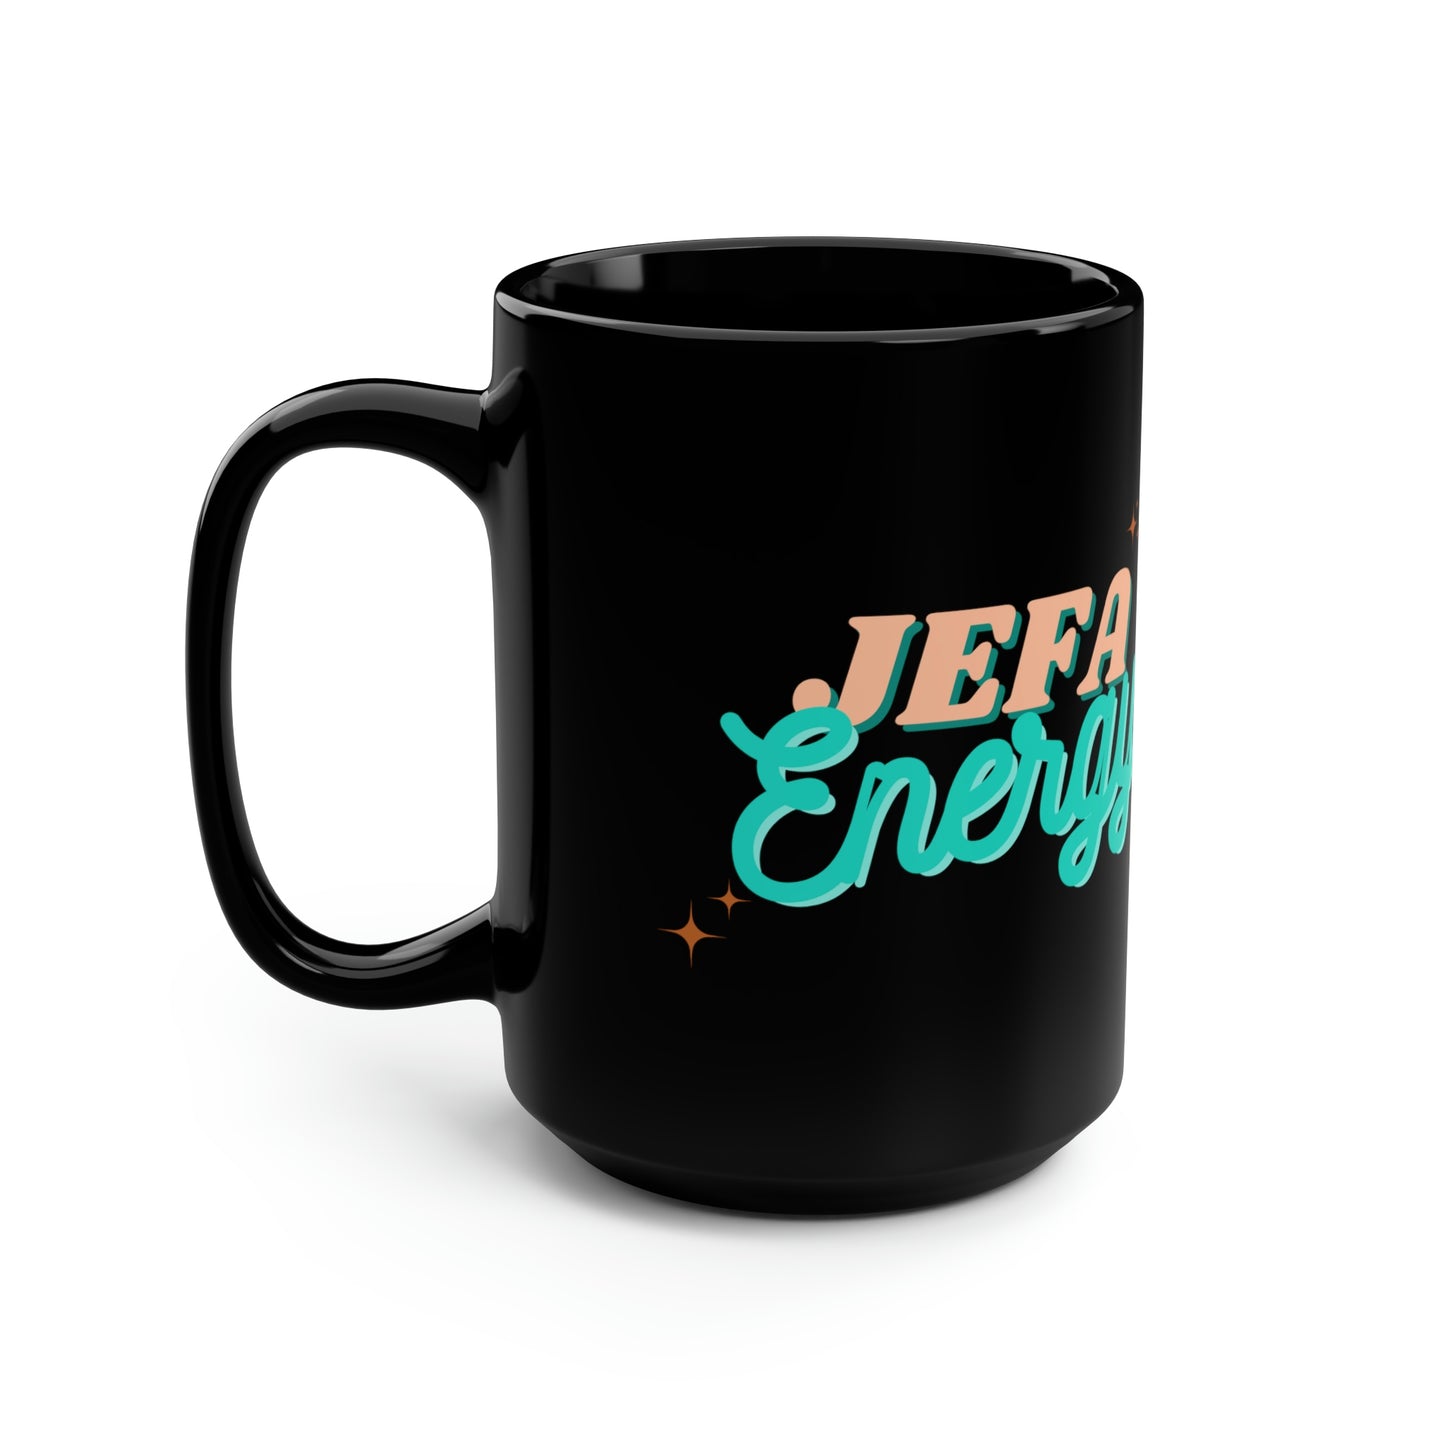 Jefa Energy Black Mug, 15oz